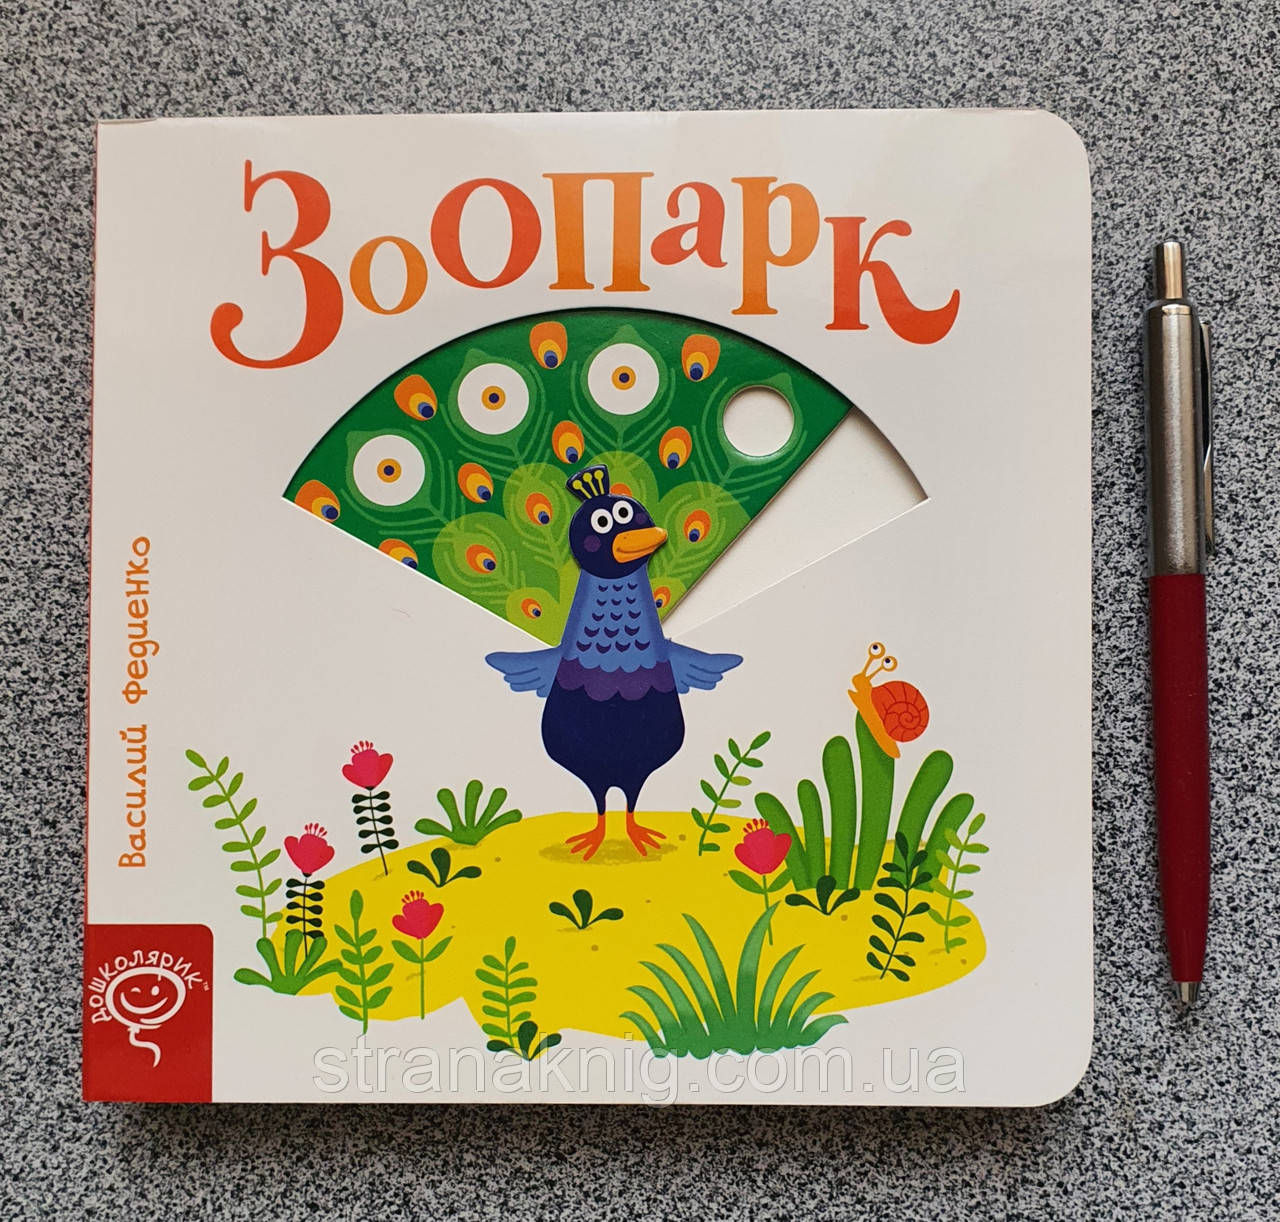 Зоопарк. Розвиваюча книжка на картоні з рухомими елементами (російською мовою).